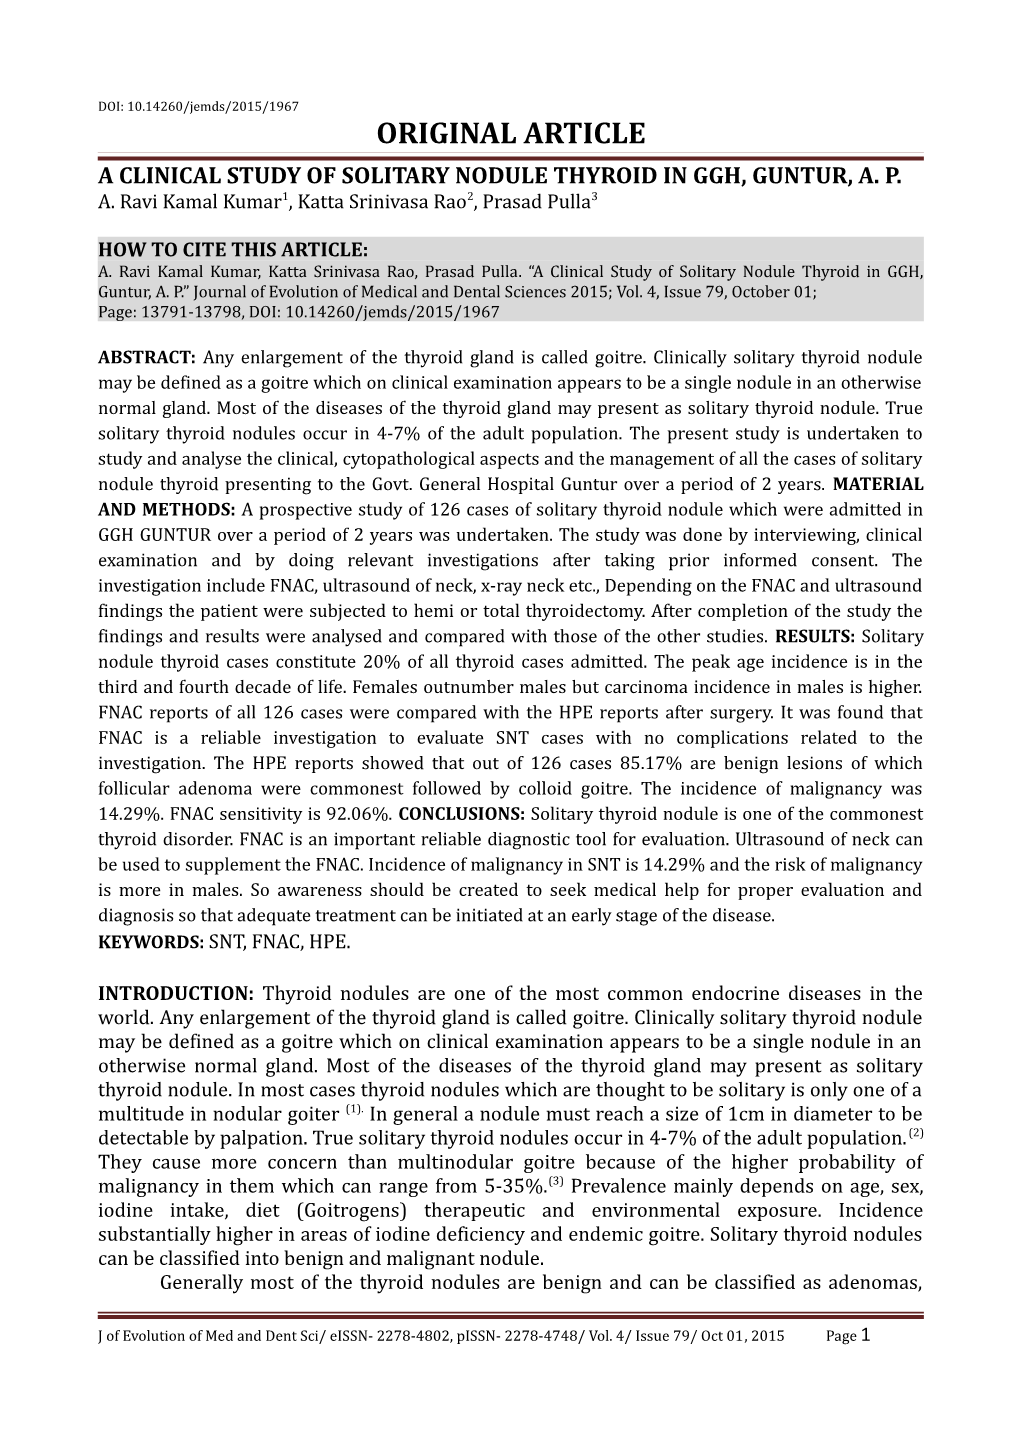 A Clinical Study of Solitary Nodule Thyroid in Ggh, Guntur, A. P